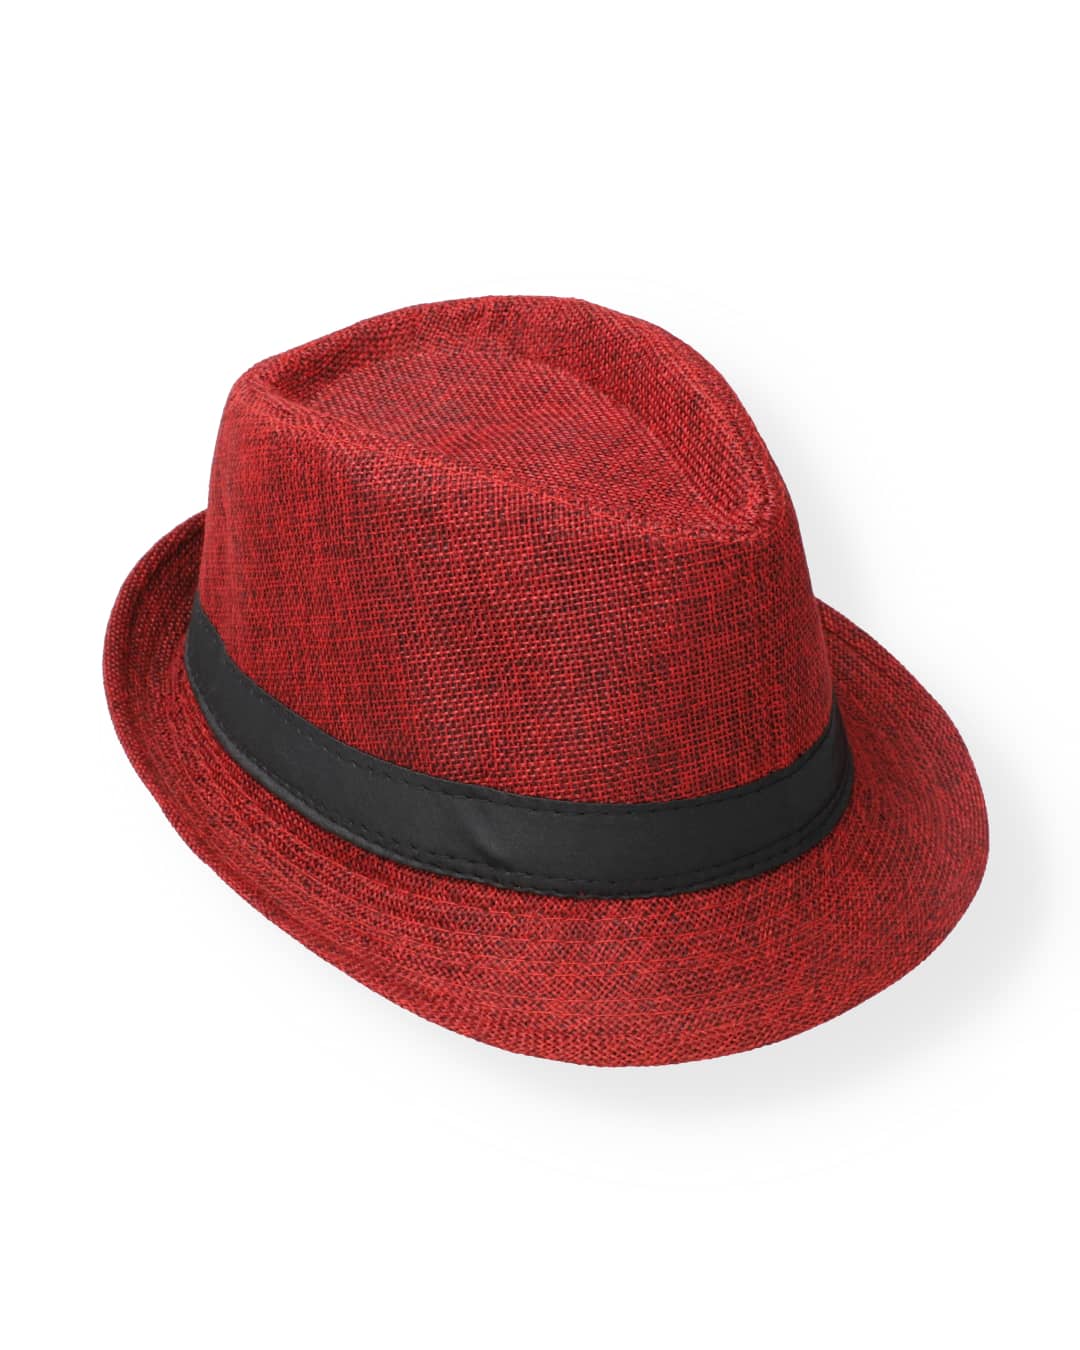 RED GENTLEMAN CAP